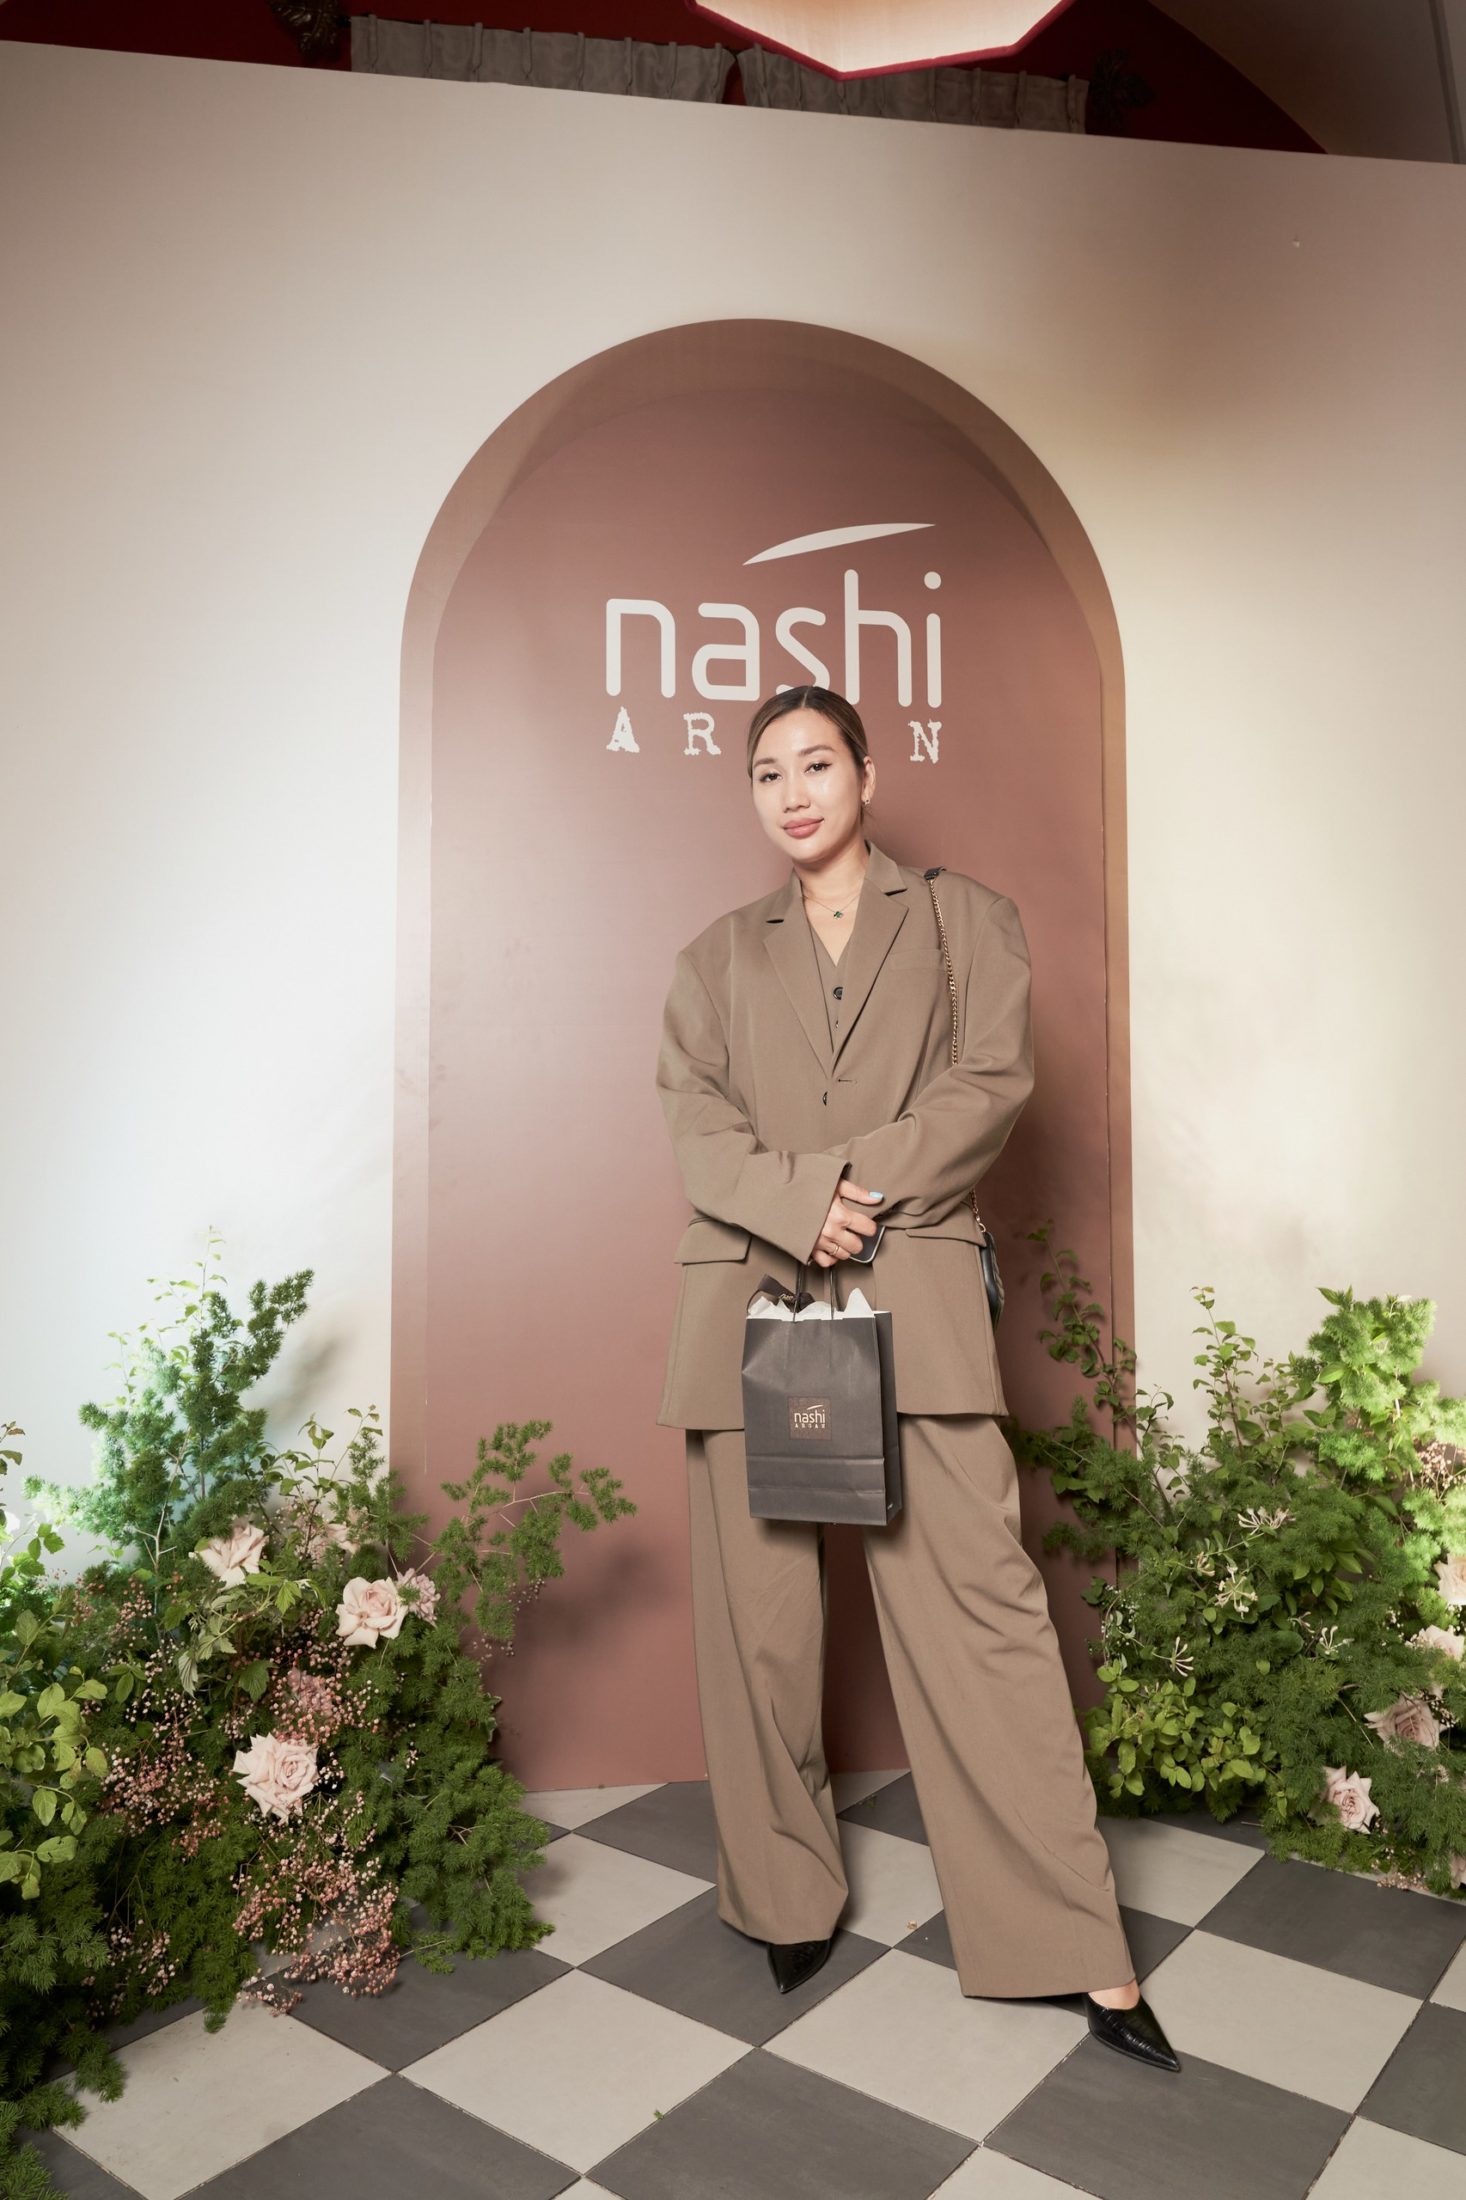 Культовый бренд для волос Nashi Argan на один вечер перенес гостей в солнечную Италию